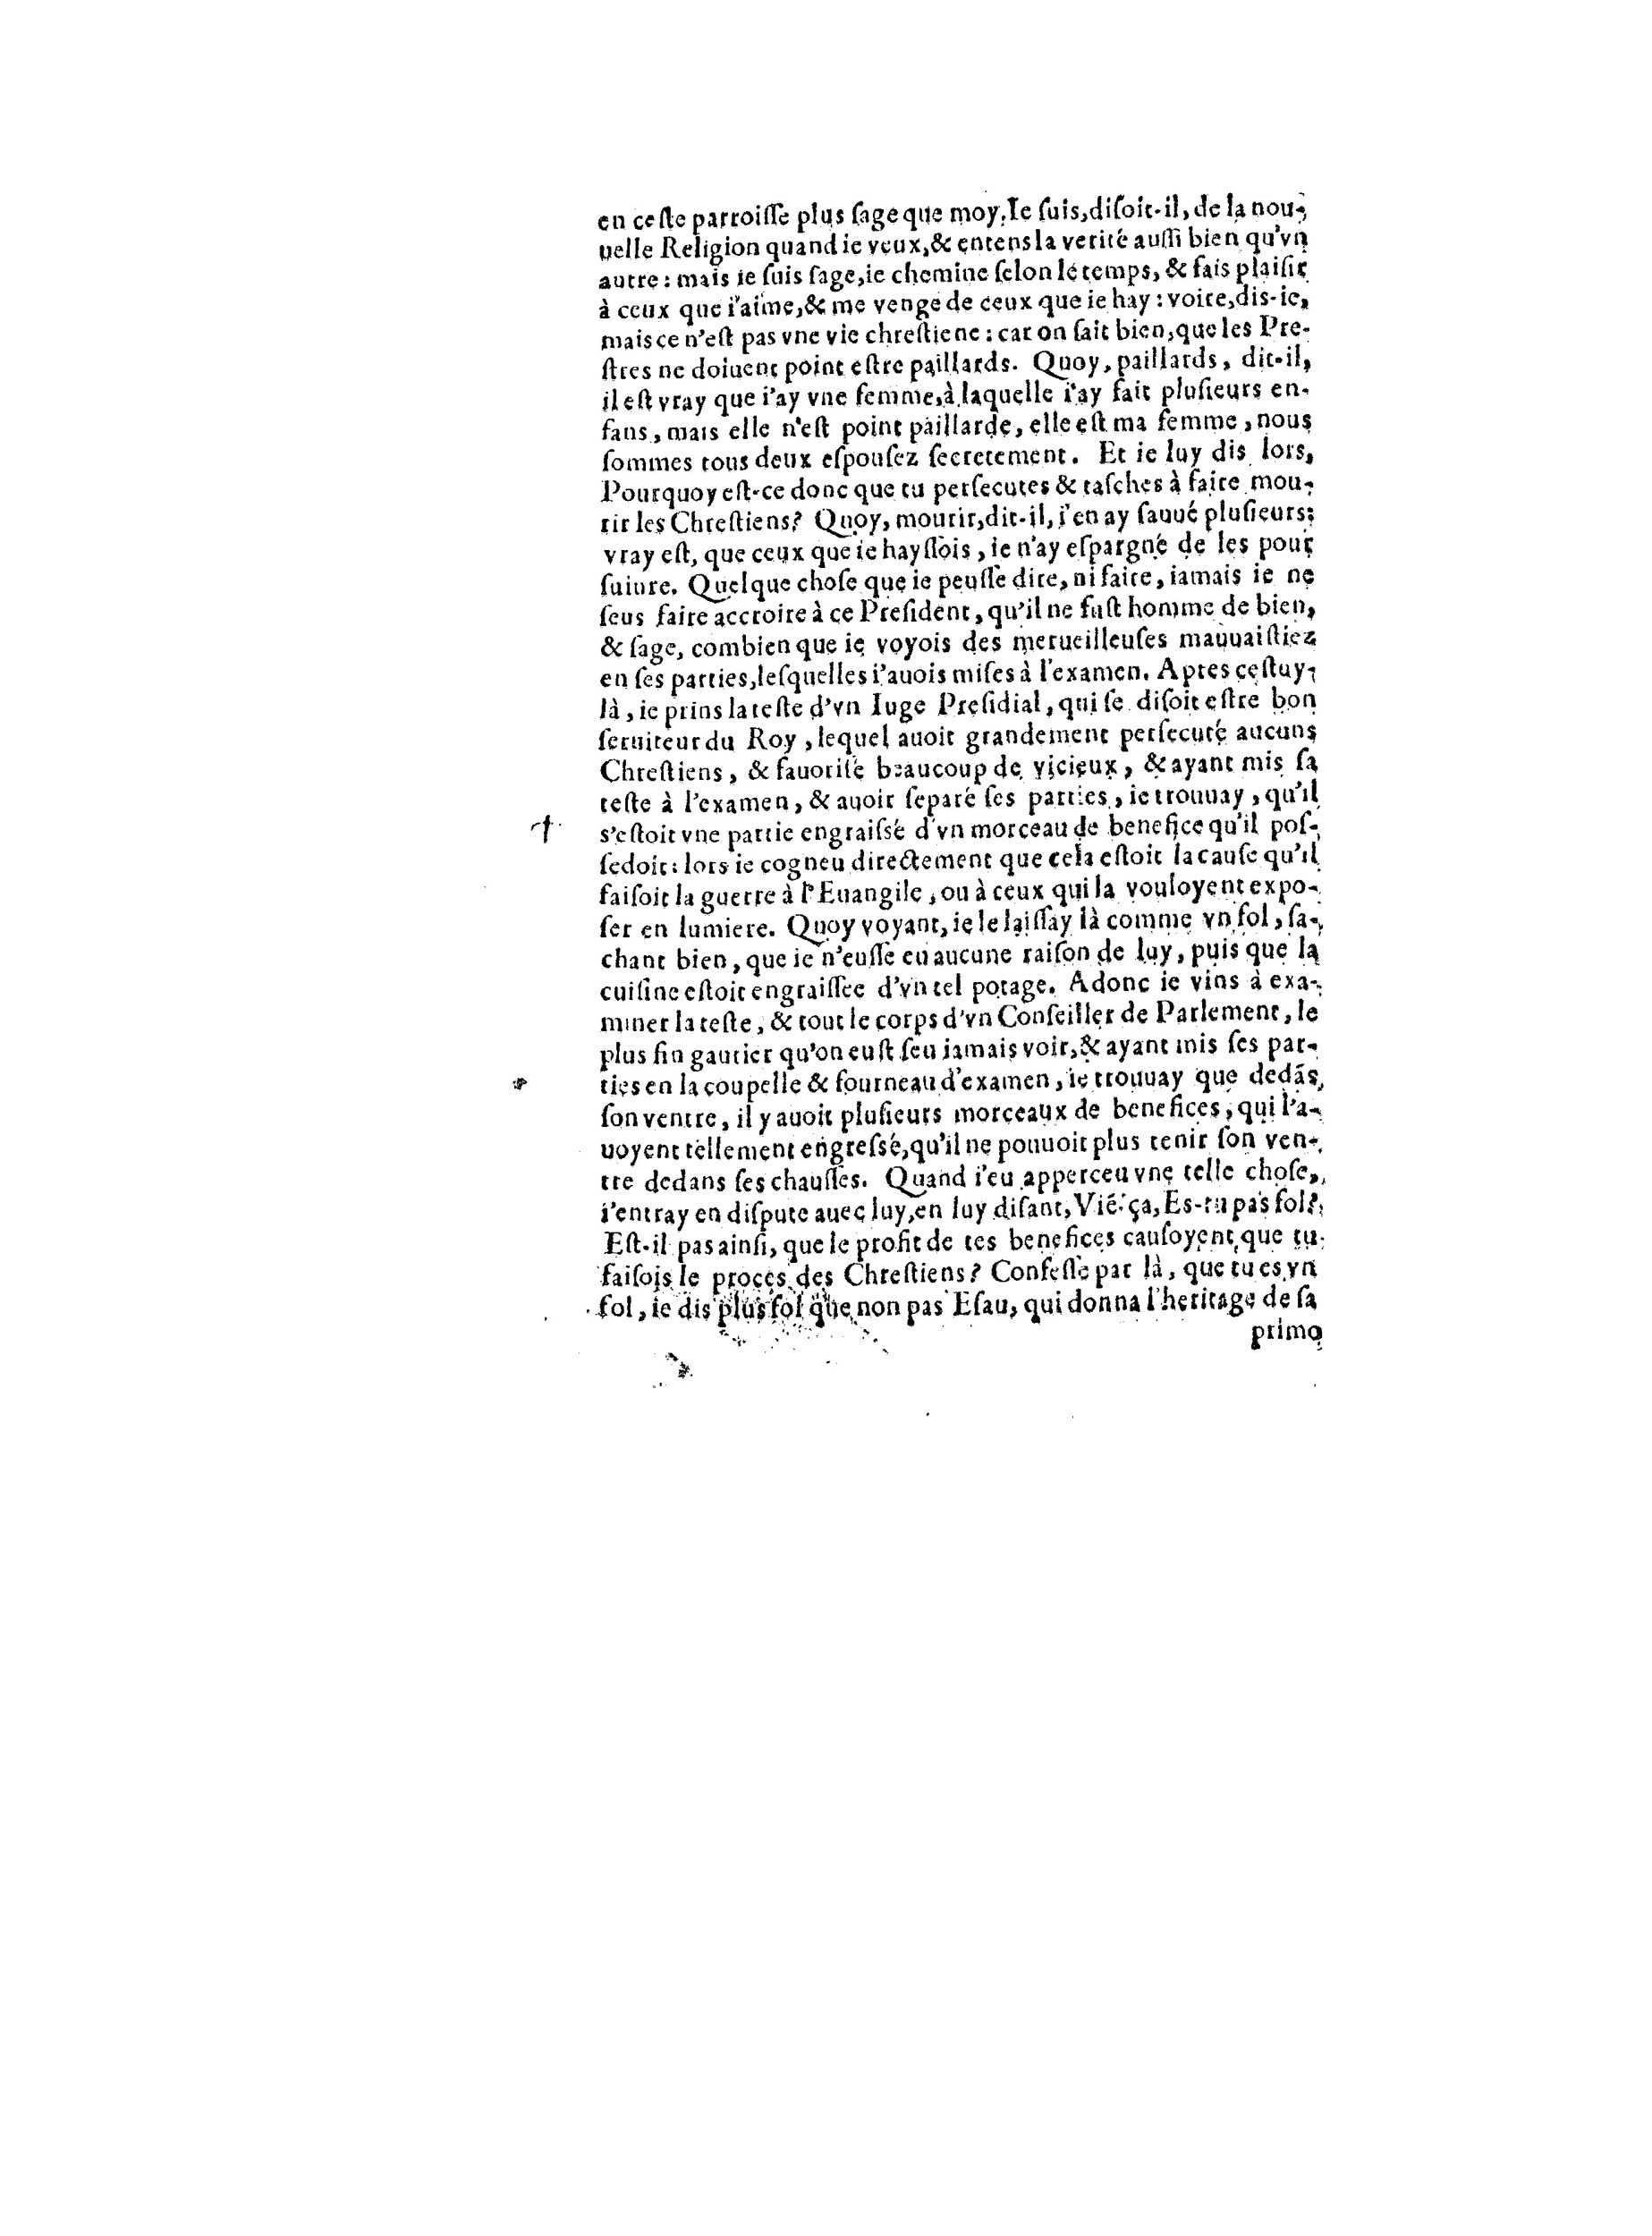 1563 Recepte veritable Berton_BNF_Page_103.jpg